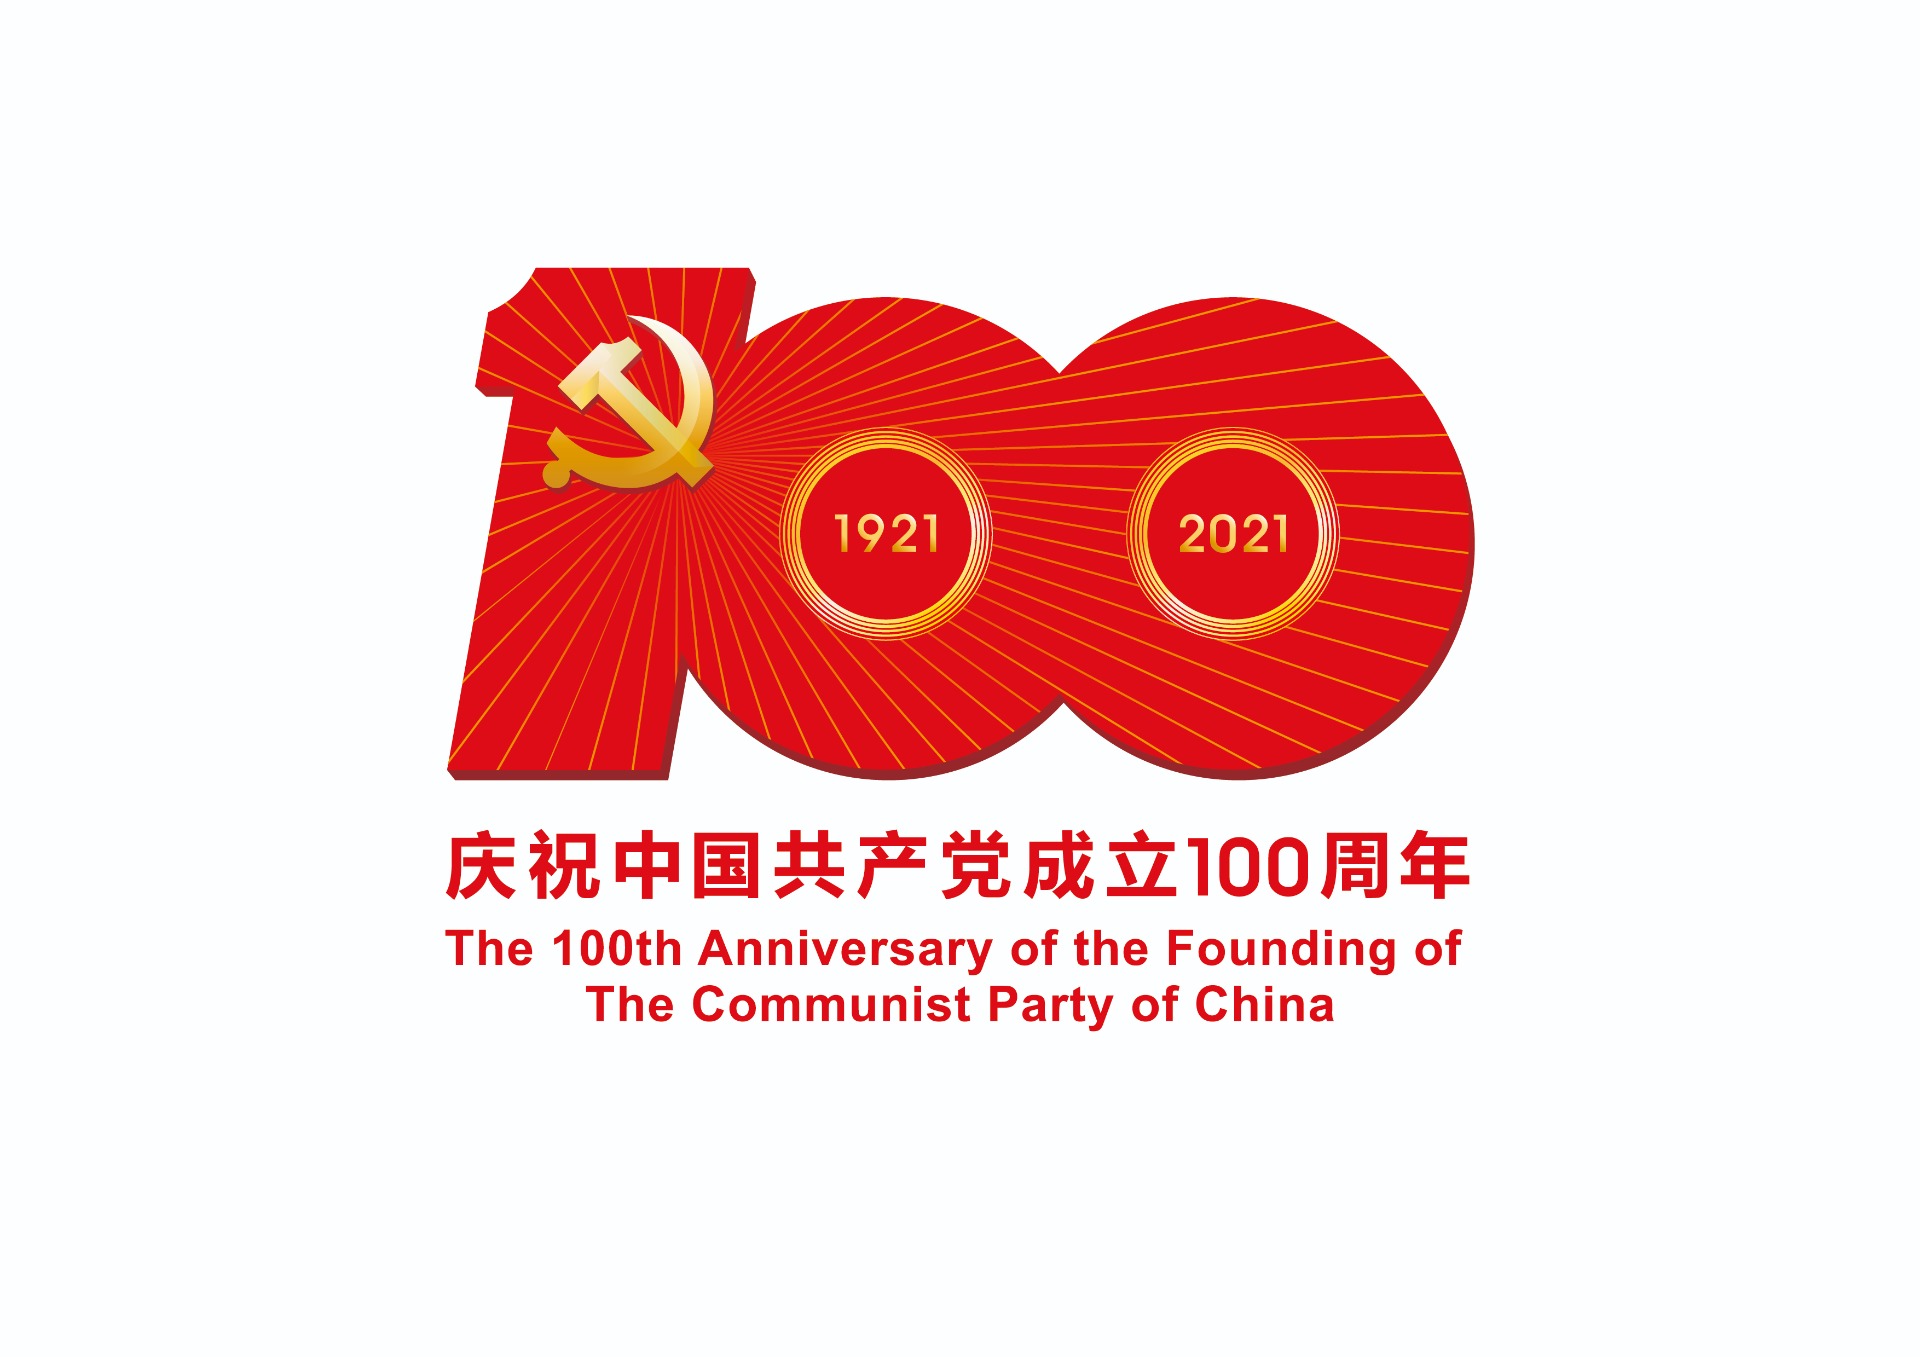 中国共产党成立100周年庆祝活动标识-JPEG格式